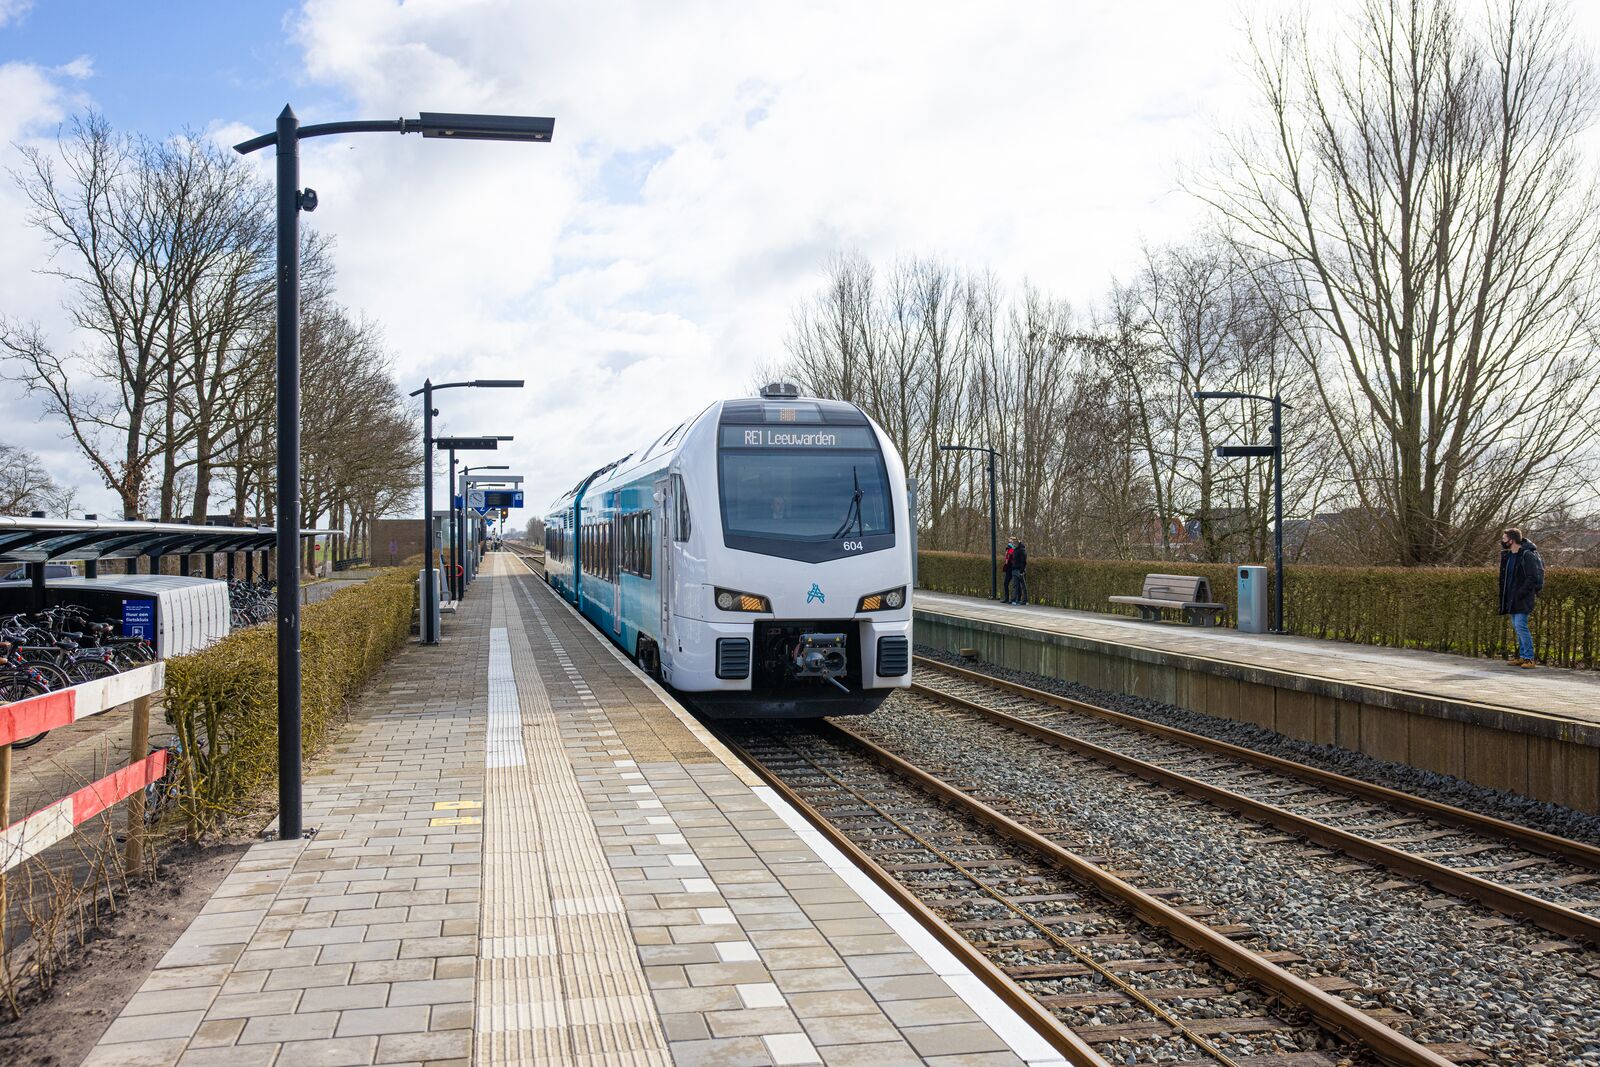 Blauwe trein van Arriva richting Leeuwarden staat stil op een klein station bij een leeg perron op een winterse dag.